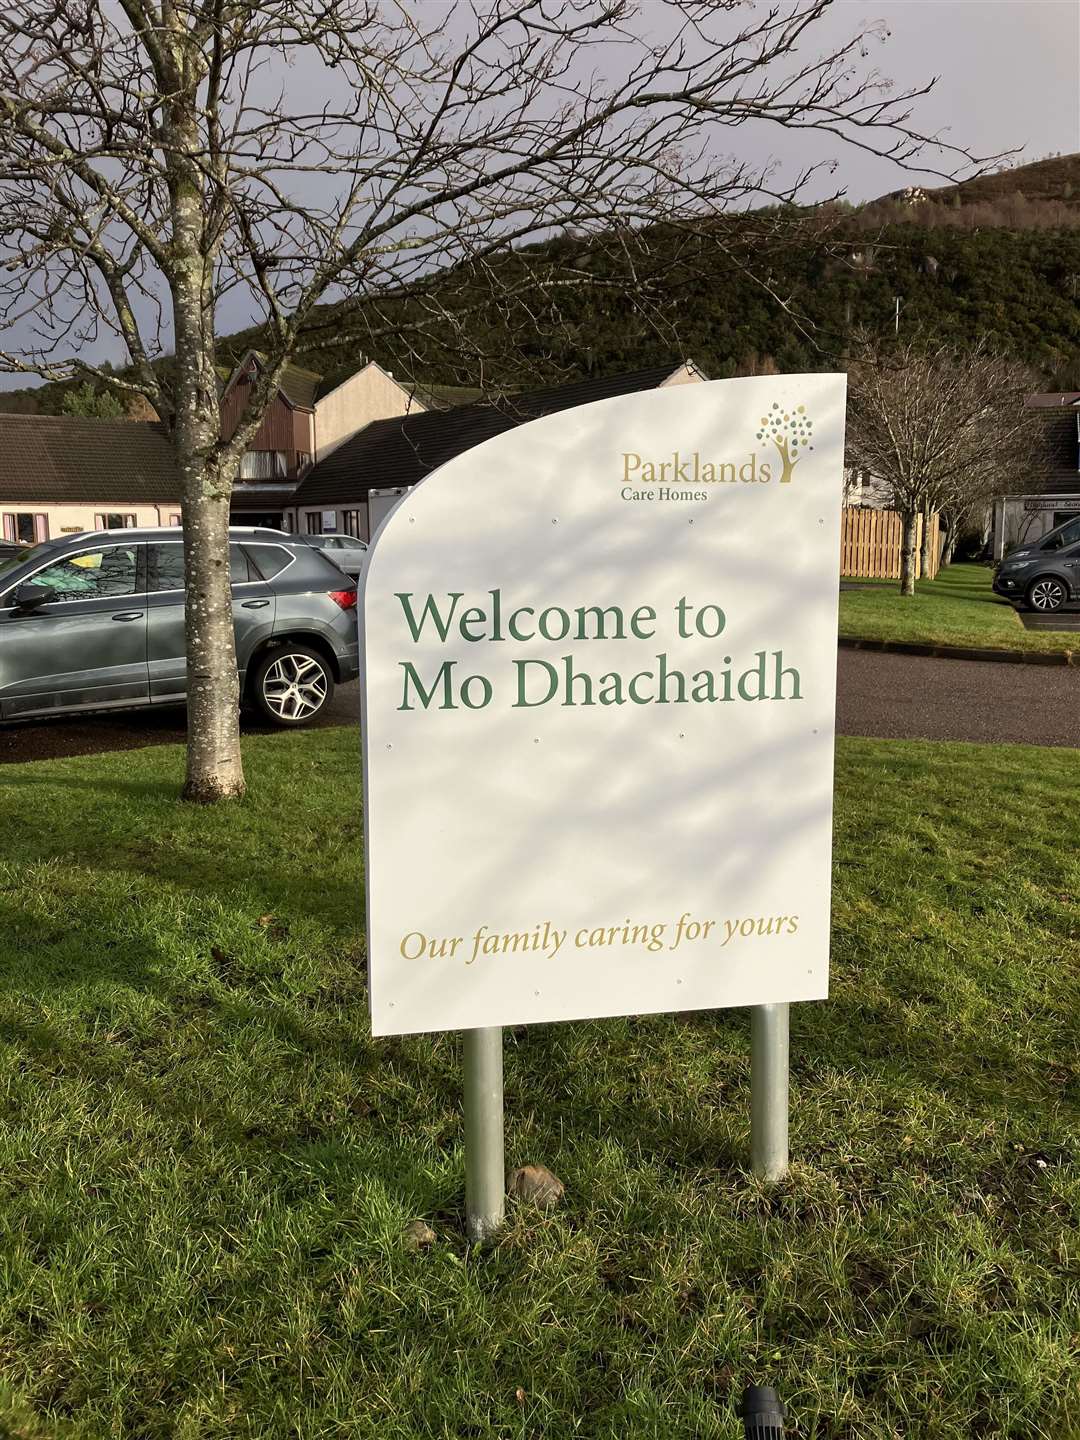 Mo Dhachaidh care home.